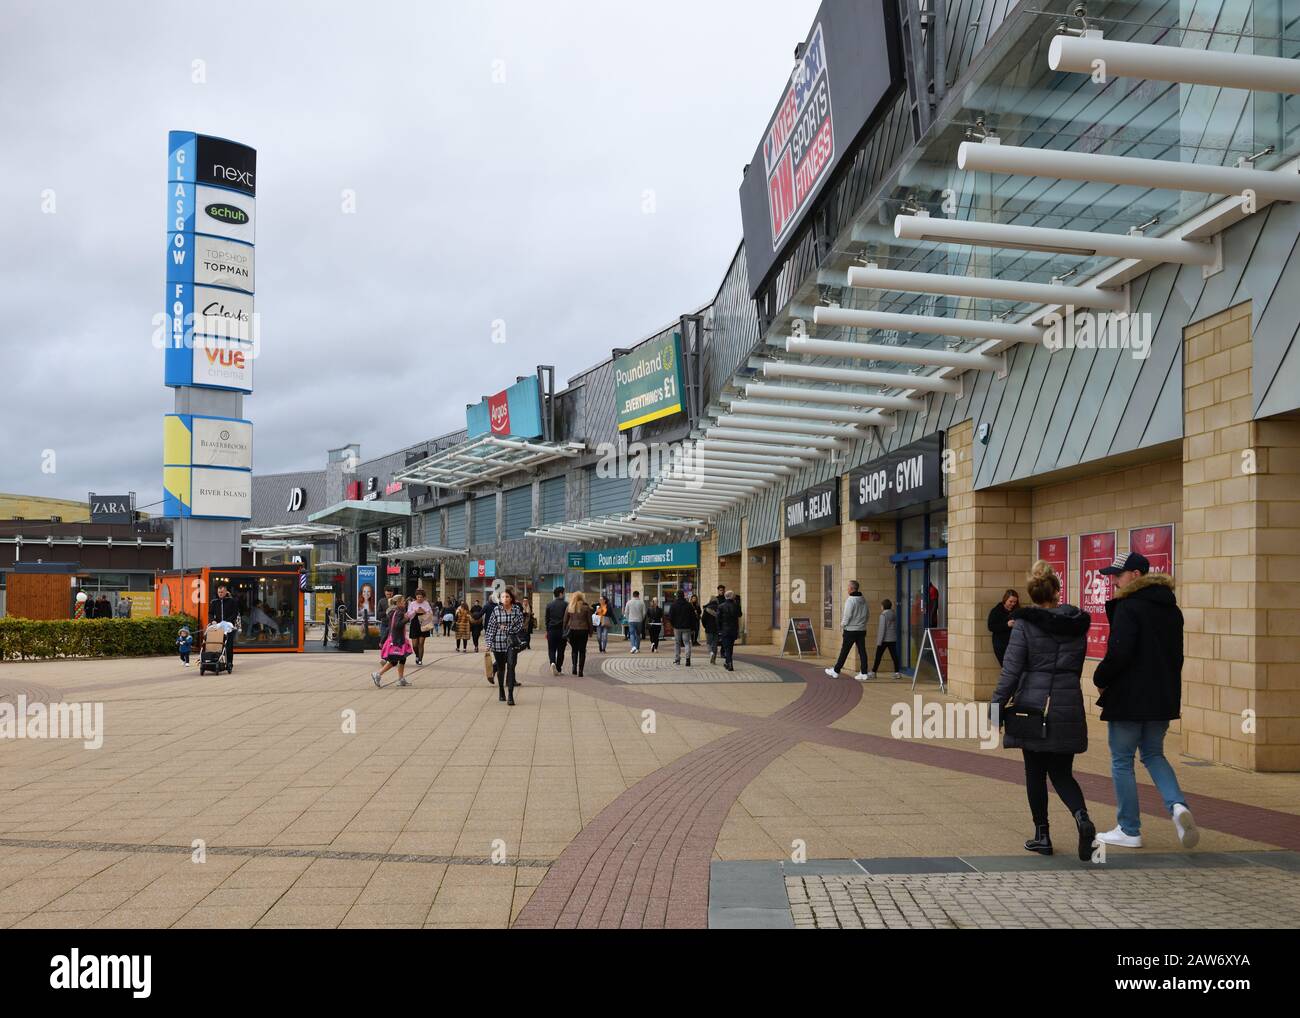 Negozi outlet presso il centro commerciale Fort Retail Park all'estremità est di Glasgow, Scozia, Regno Unito Foto Stock